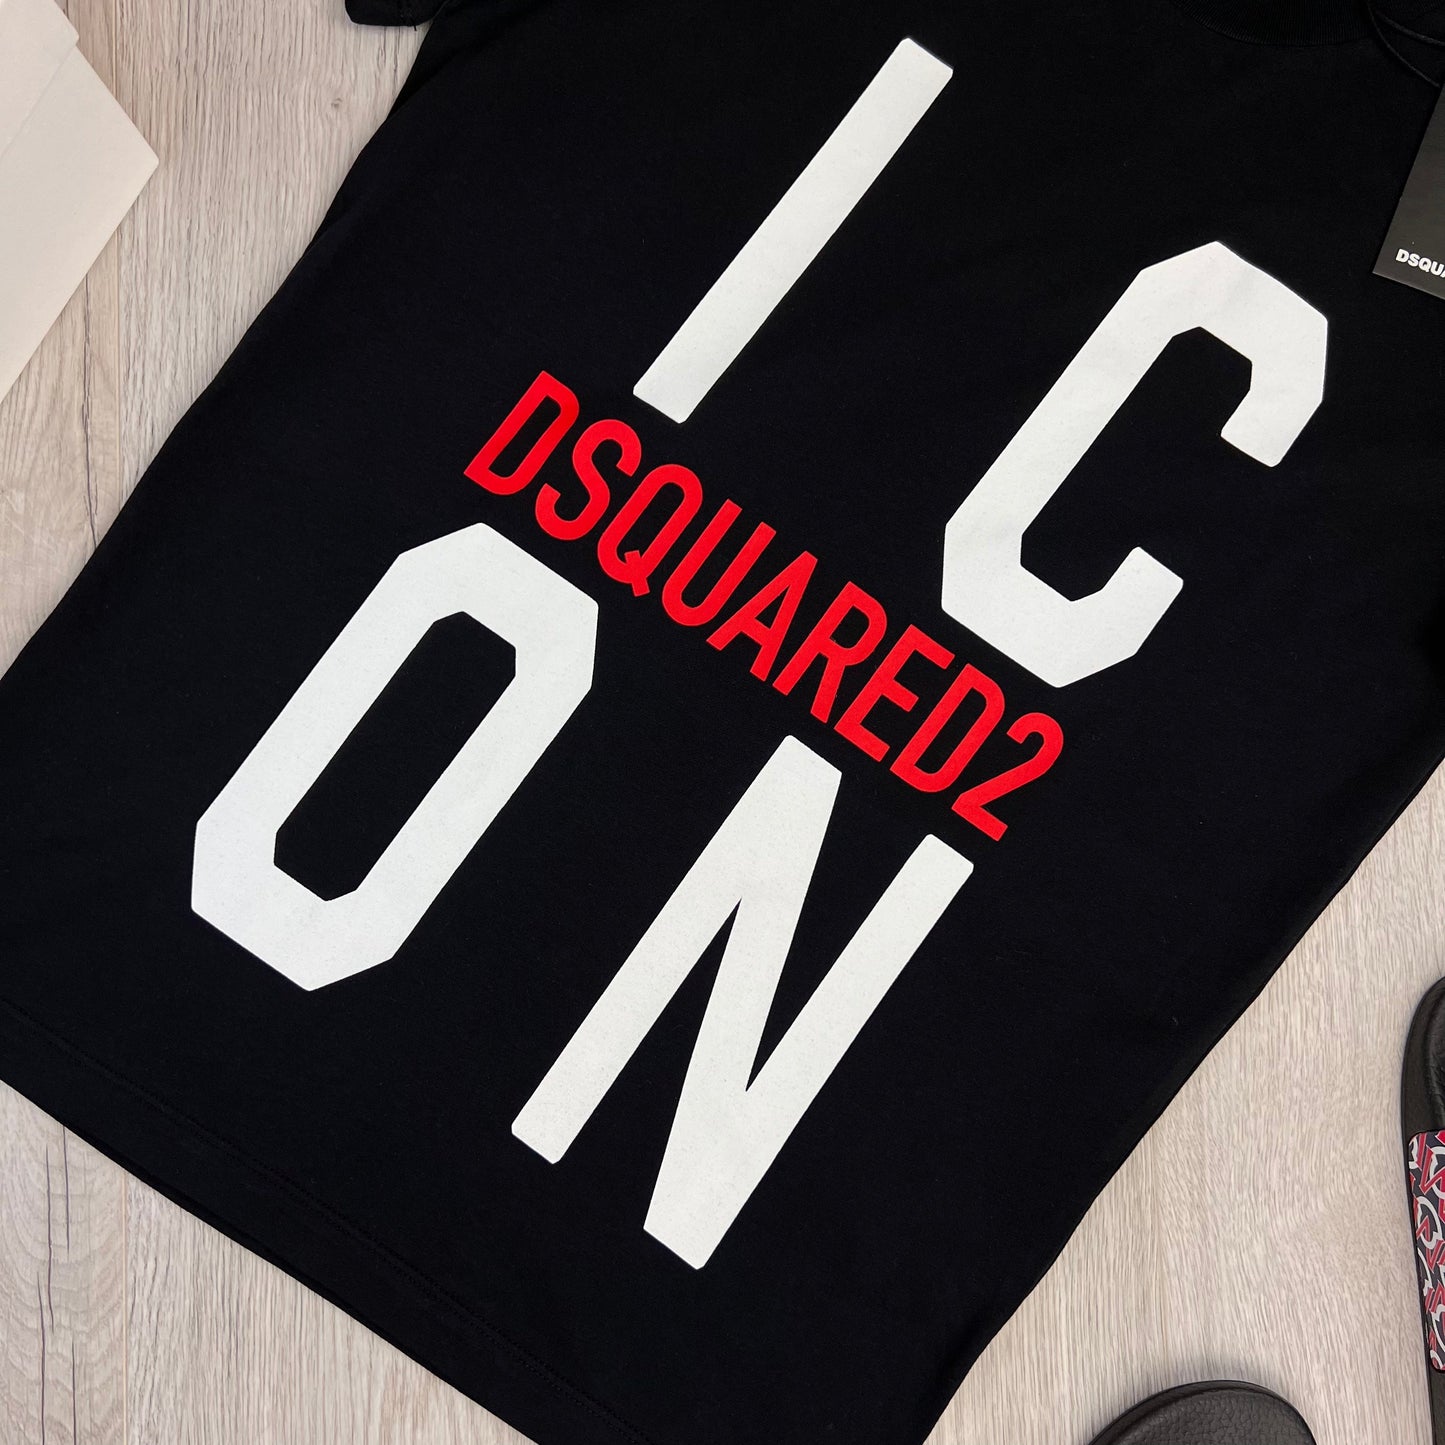 Dsquared2 Men’s Black ‘ICON’ Logo T-shirt